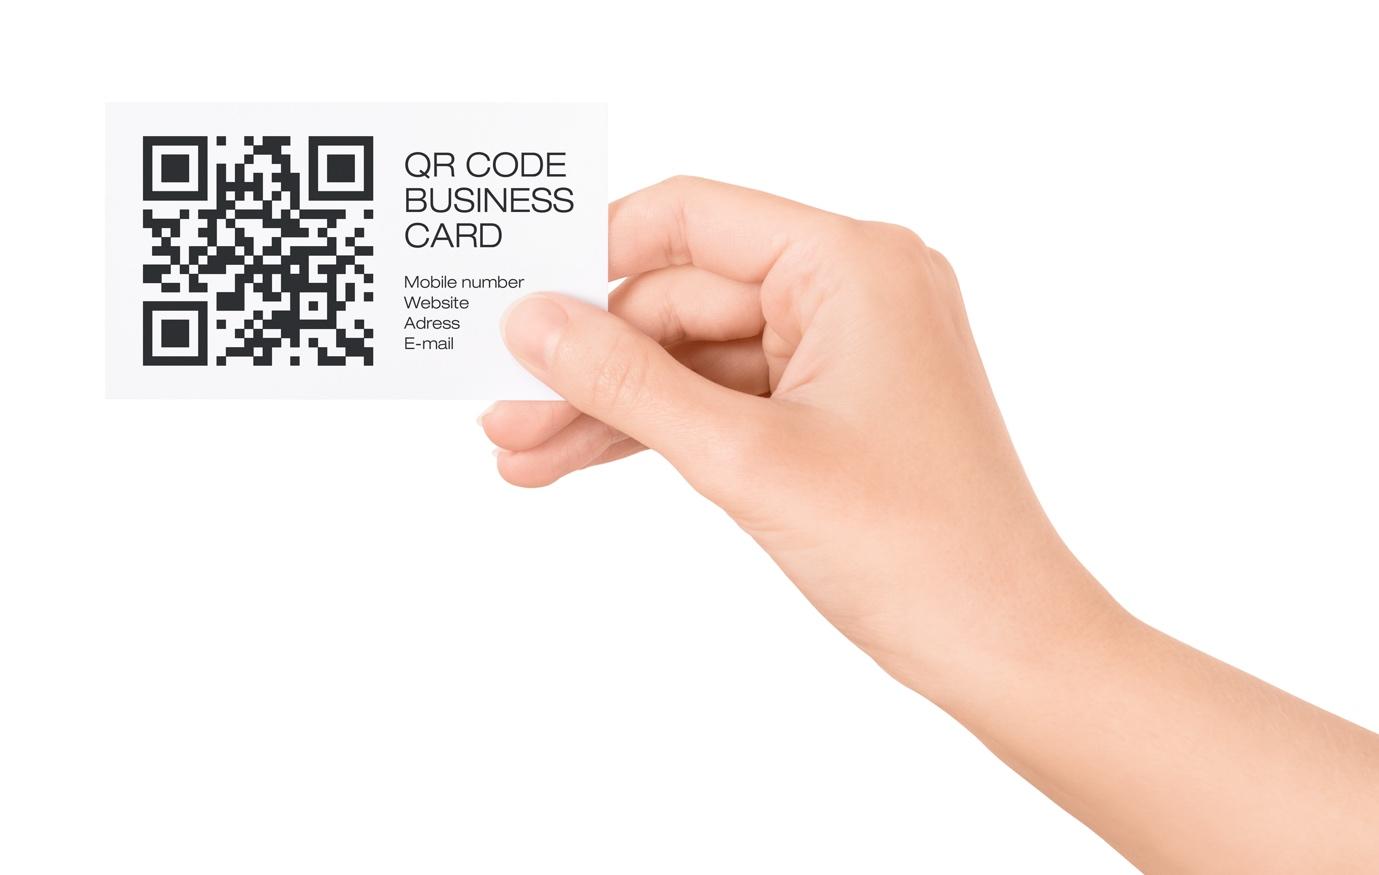 Сбер бизнес qr код. Визитки с QR кодами. Современные визитки с QR кодом. Прозрачные визитки с QR кодом. Стильные визитки с QR кодом.